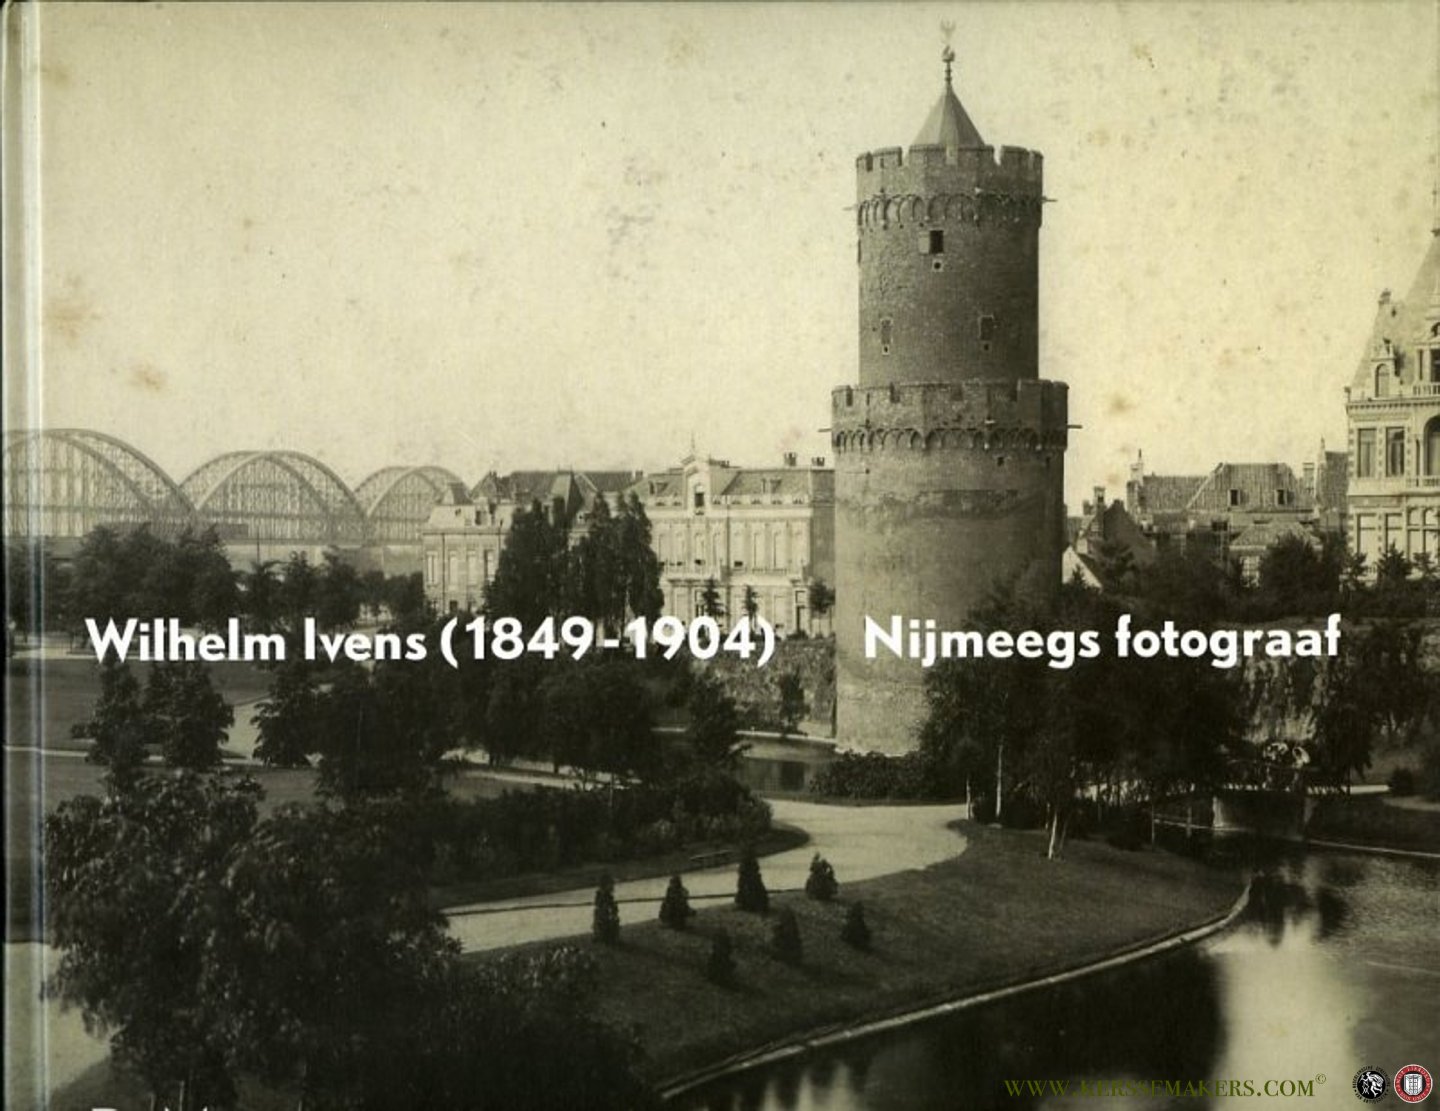 COPPES, Niels / STUFKENS, André - Wilhelm Ivens (1849-1904) Nijmeegs fotograaf